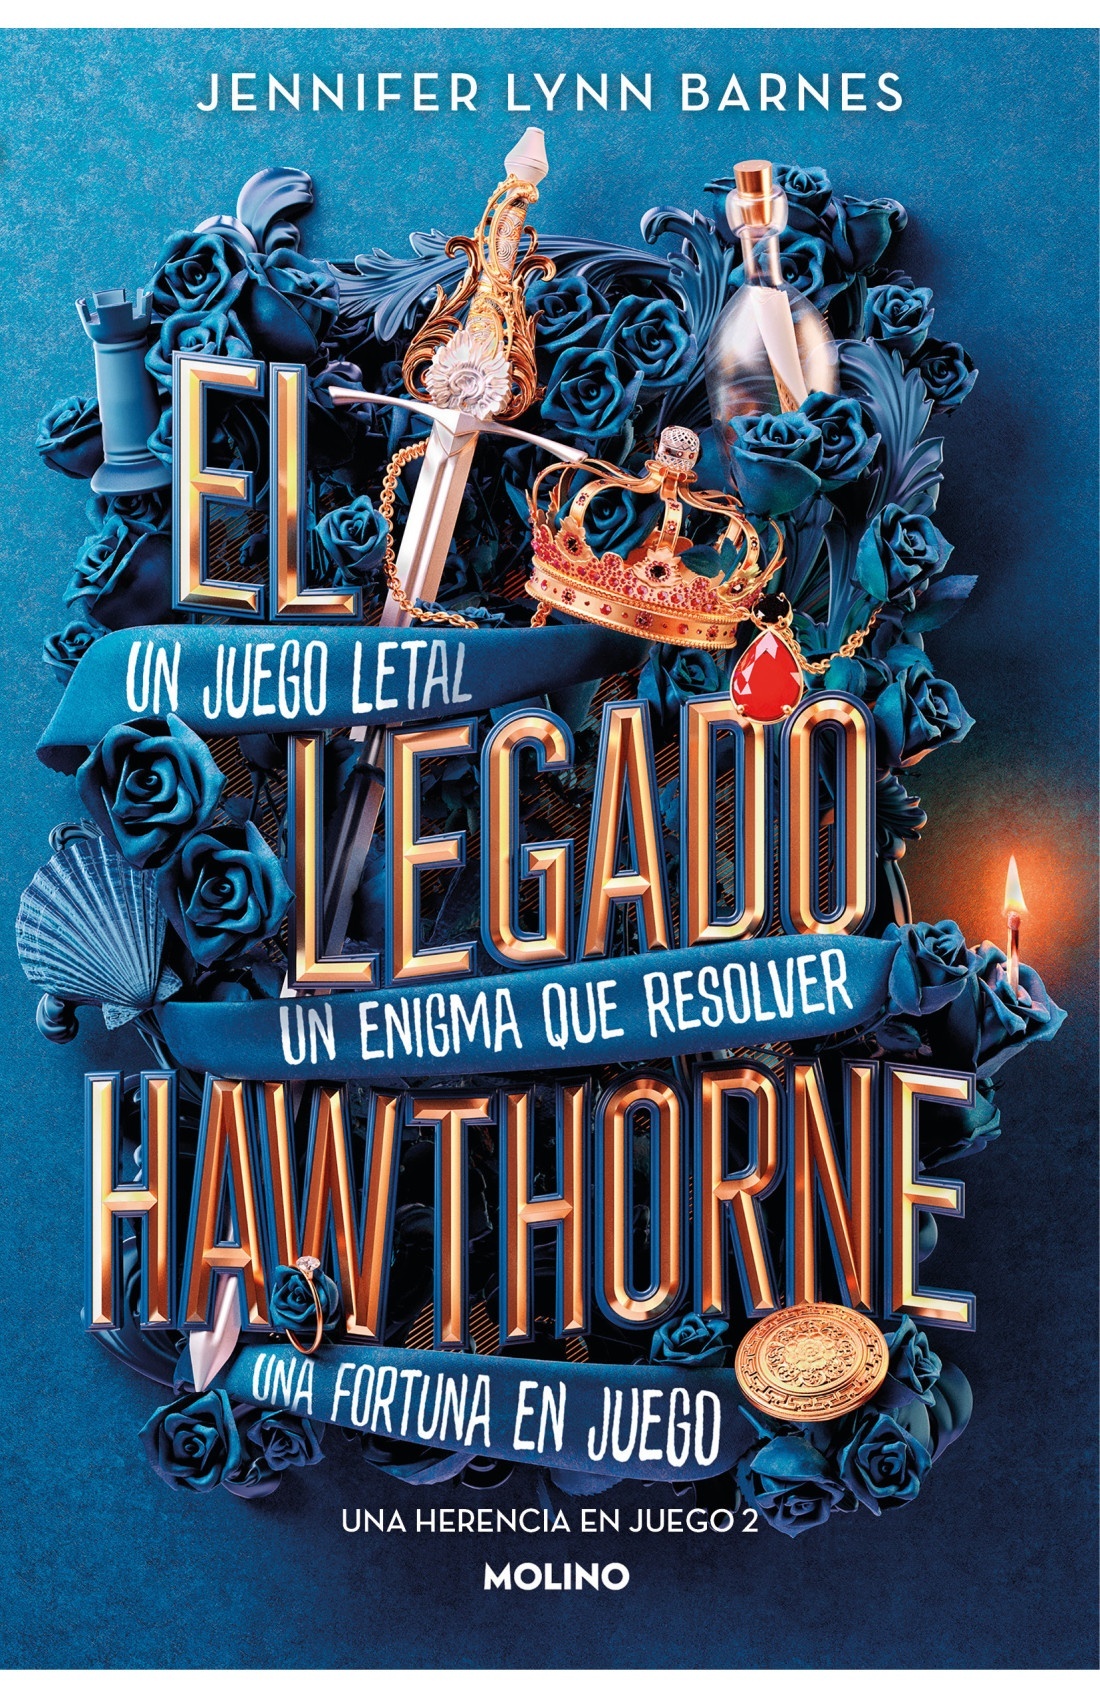 Legado hawthorne, El "Una herencia en juego 2"